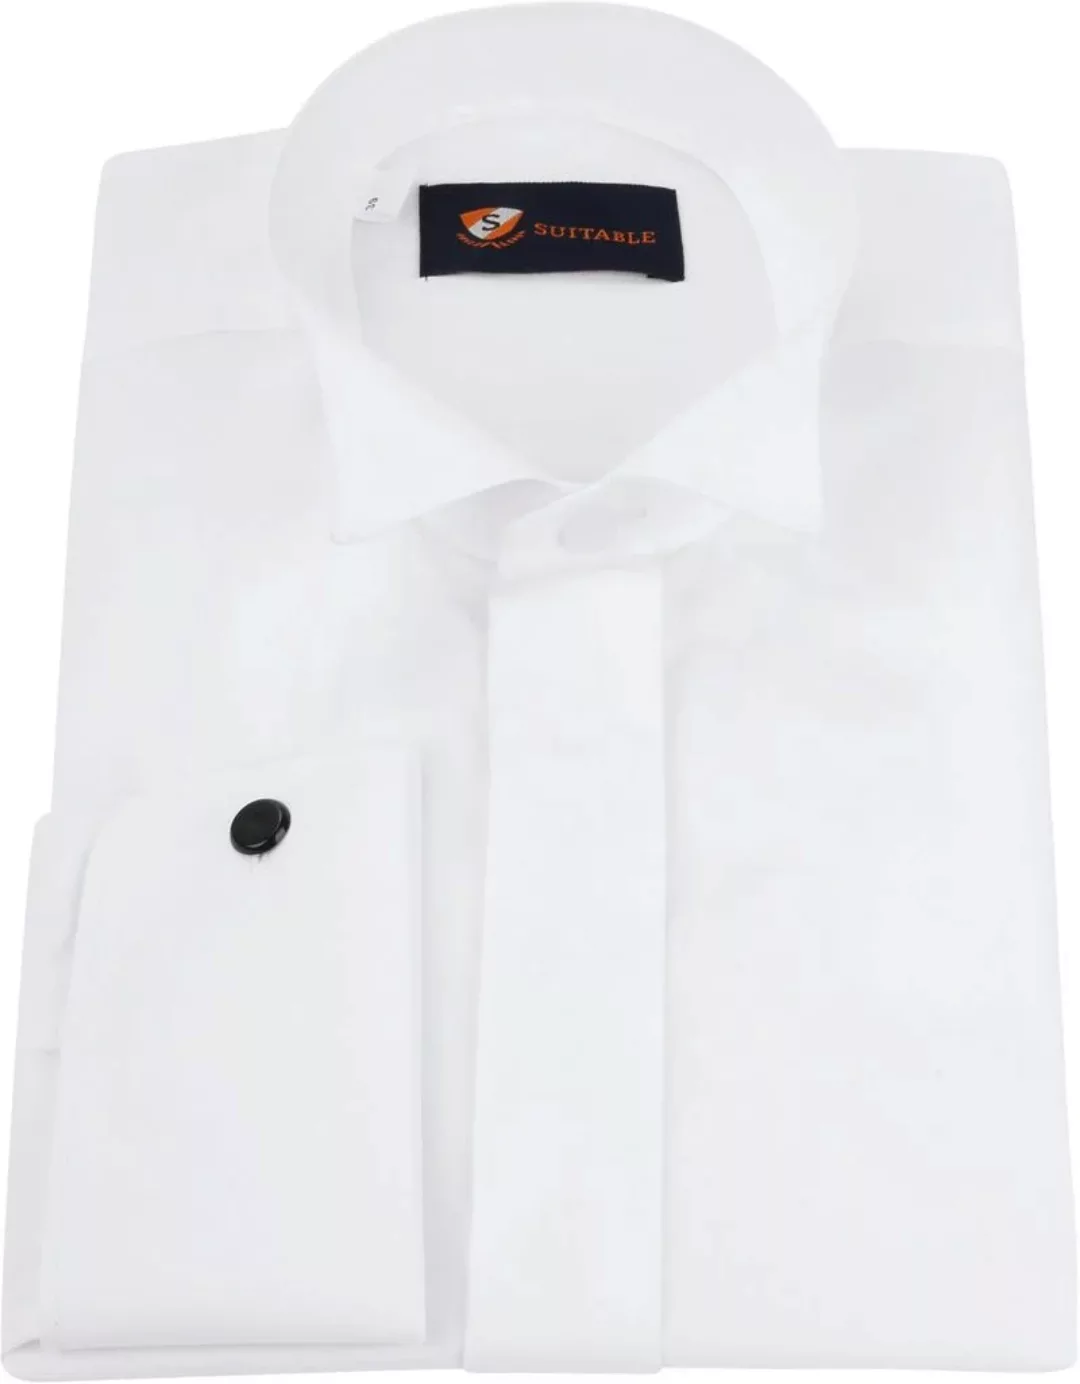 Suitable Hemd Weiß Plissiert - Größe 44 günstig online kaufen